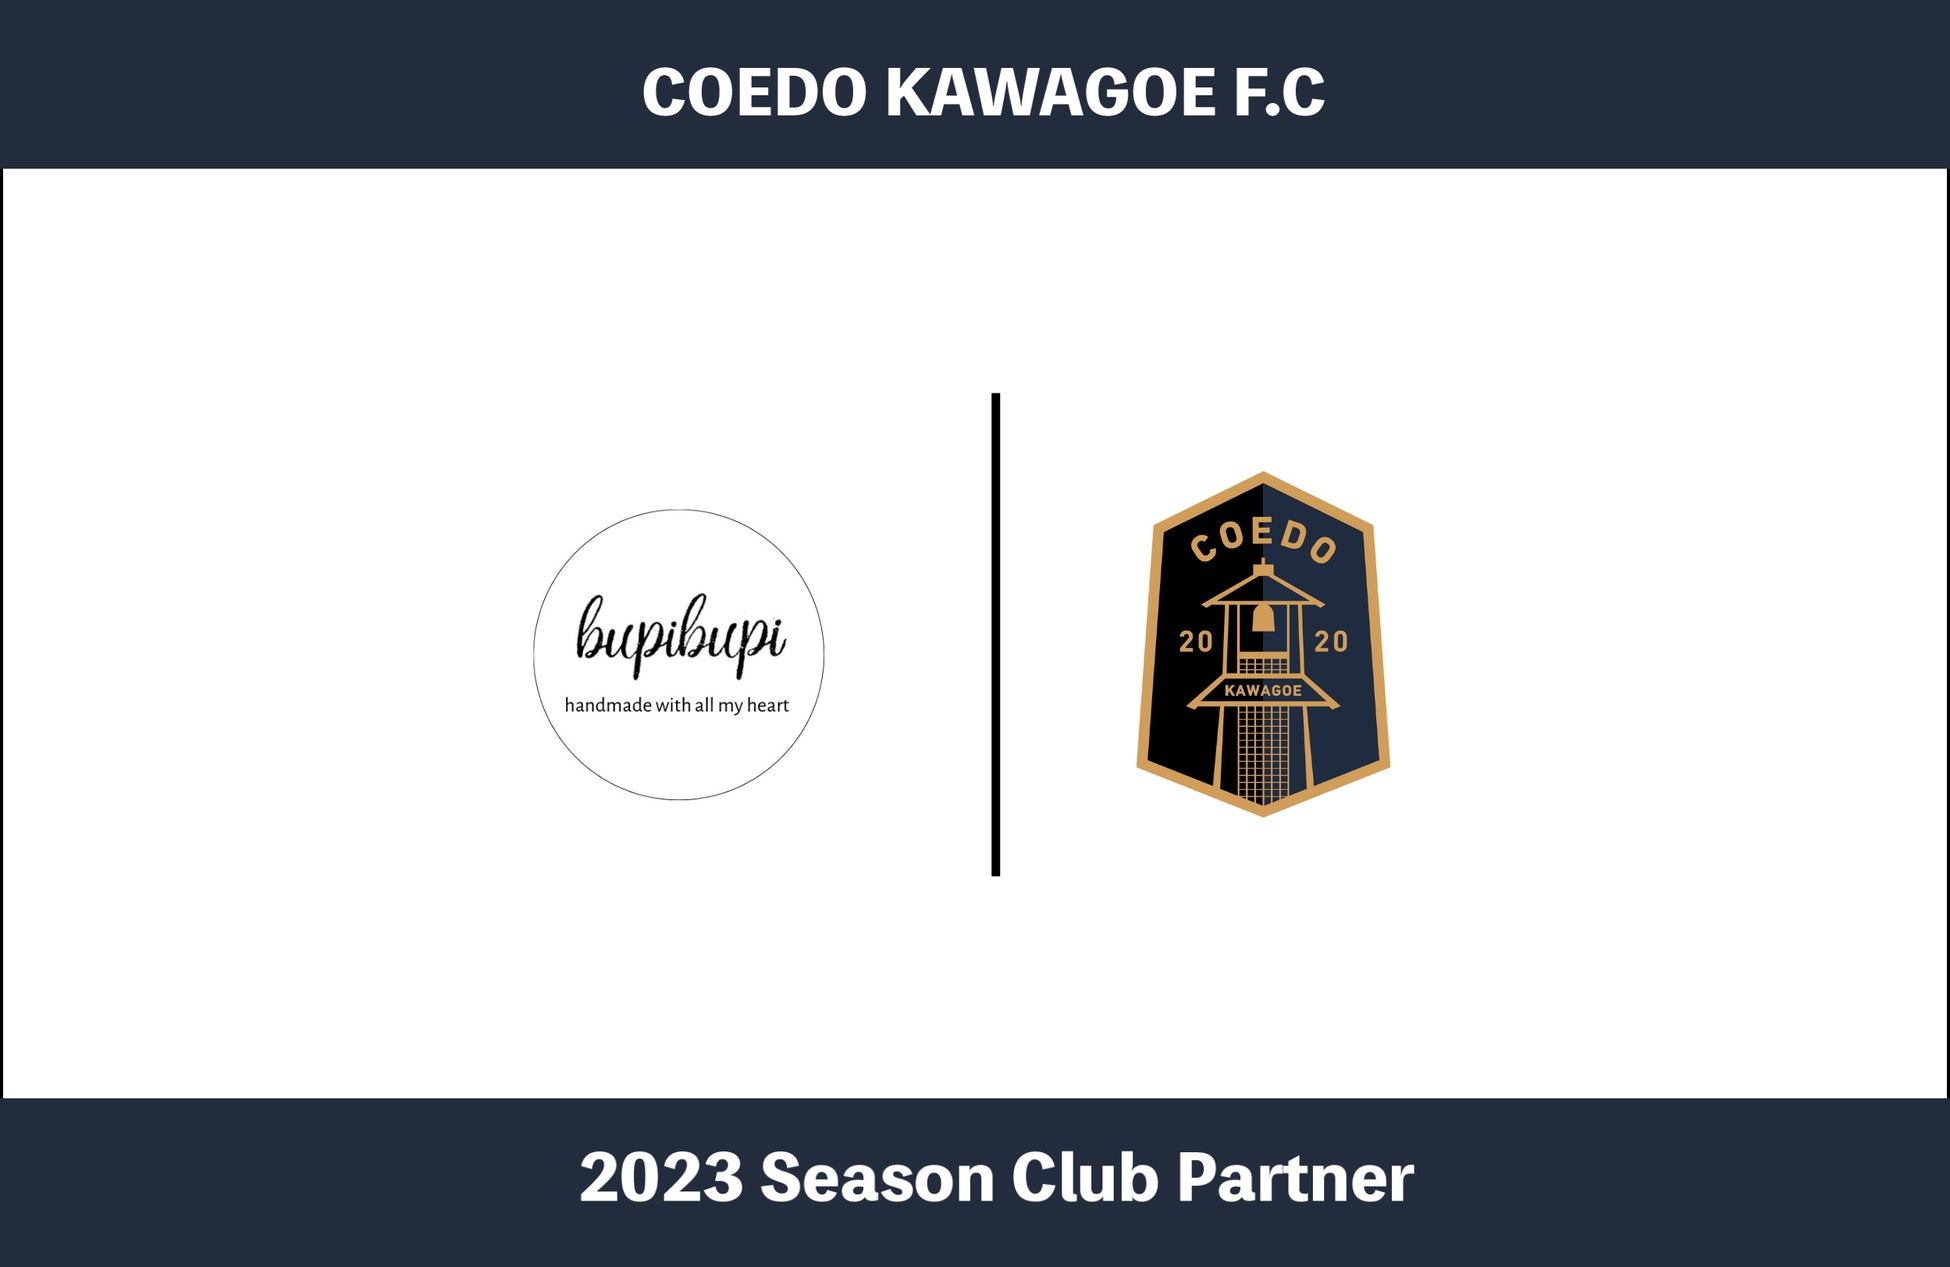 埼玉県川越市からJリーグを目指す「COEDO KAWAGOE F.C」、かぎ針編み小物等を展開し、YouTube編み方動画紹介を行うbupibupiと2023シーズンのクラブパートナー契約を締結